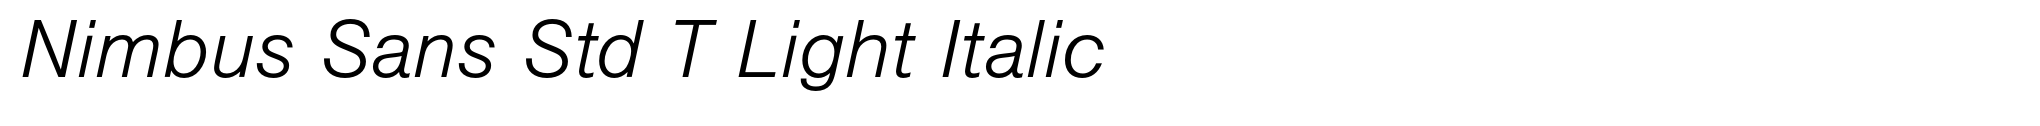 Nimbus Sans Std T Light Italic image